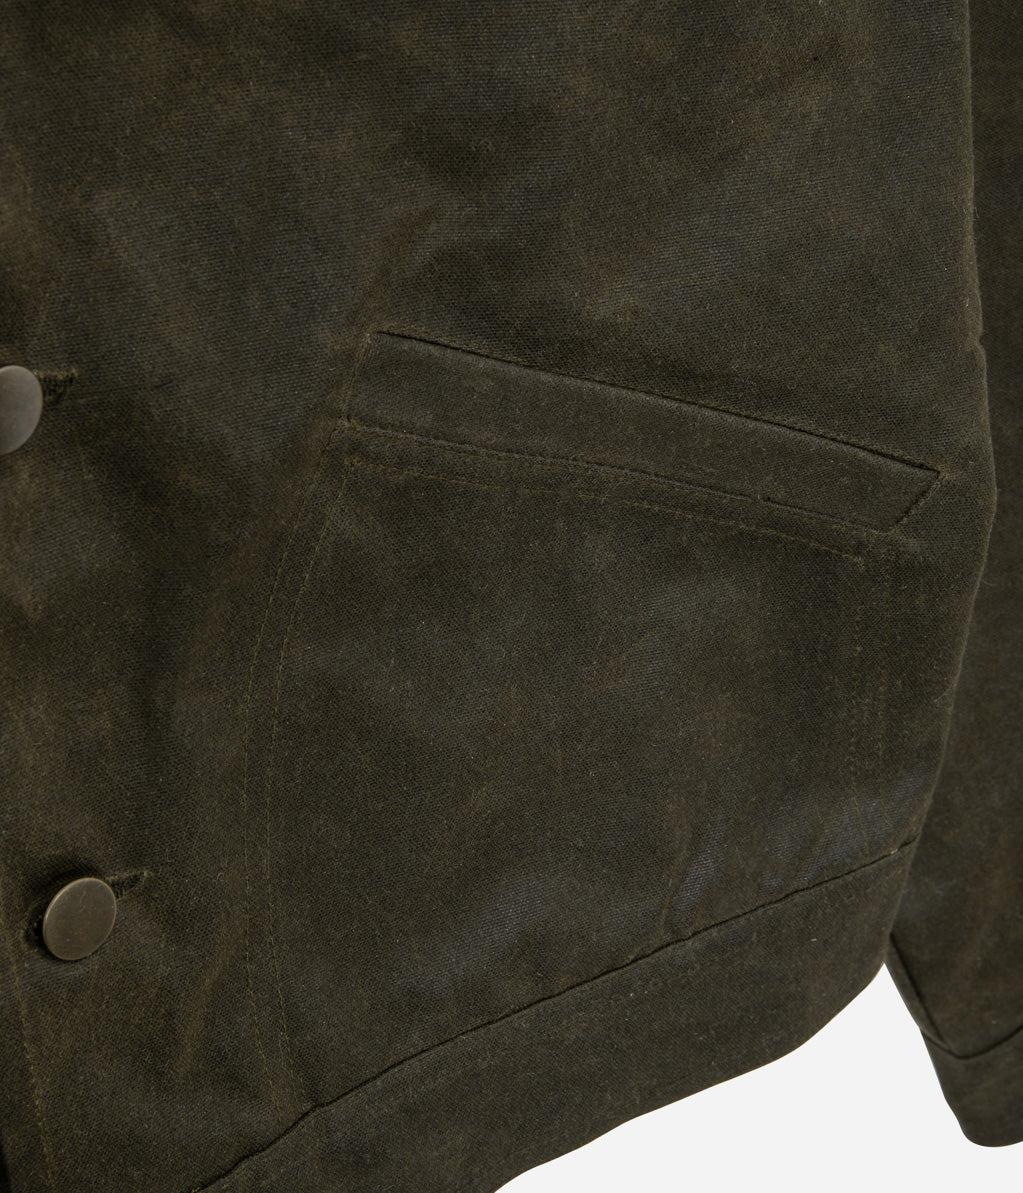 Tonton et Fils - Le blouson homme « Monterey » canvas waxé kaki et doublure polycoton de fabrication française - Vue sur une poche avant